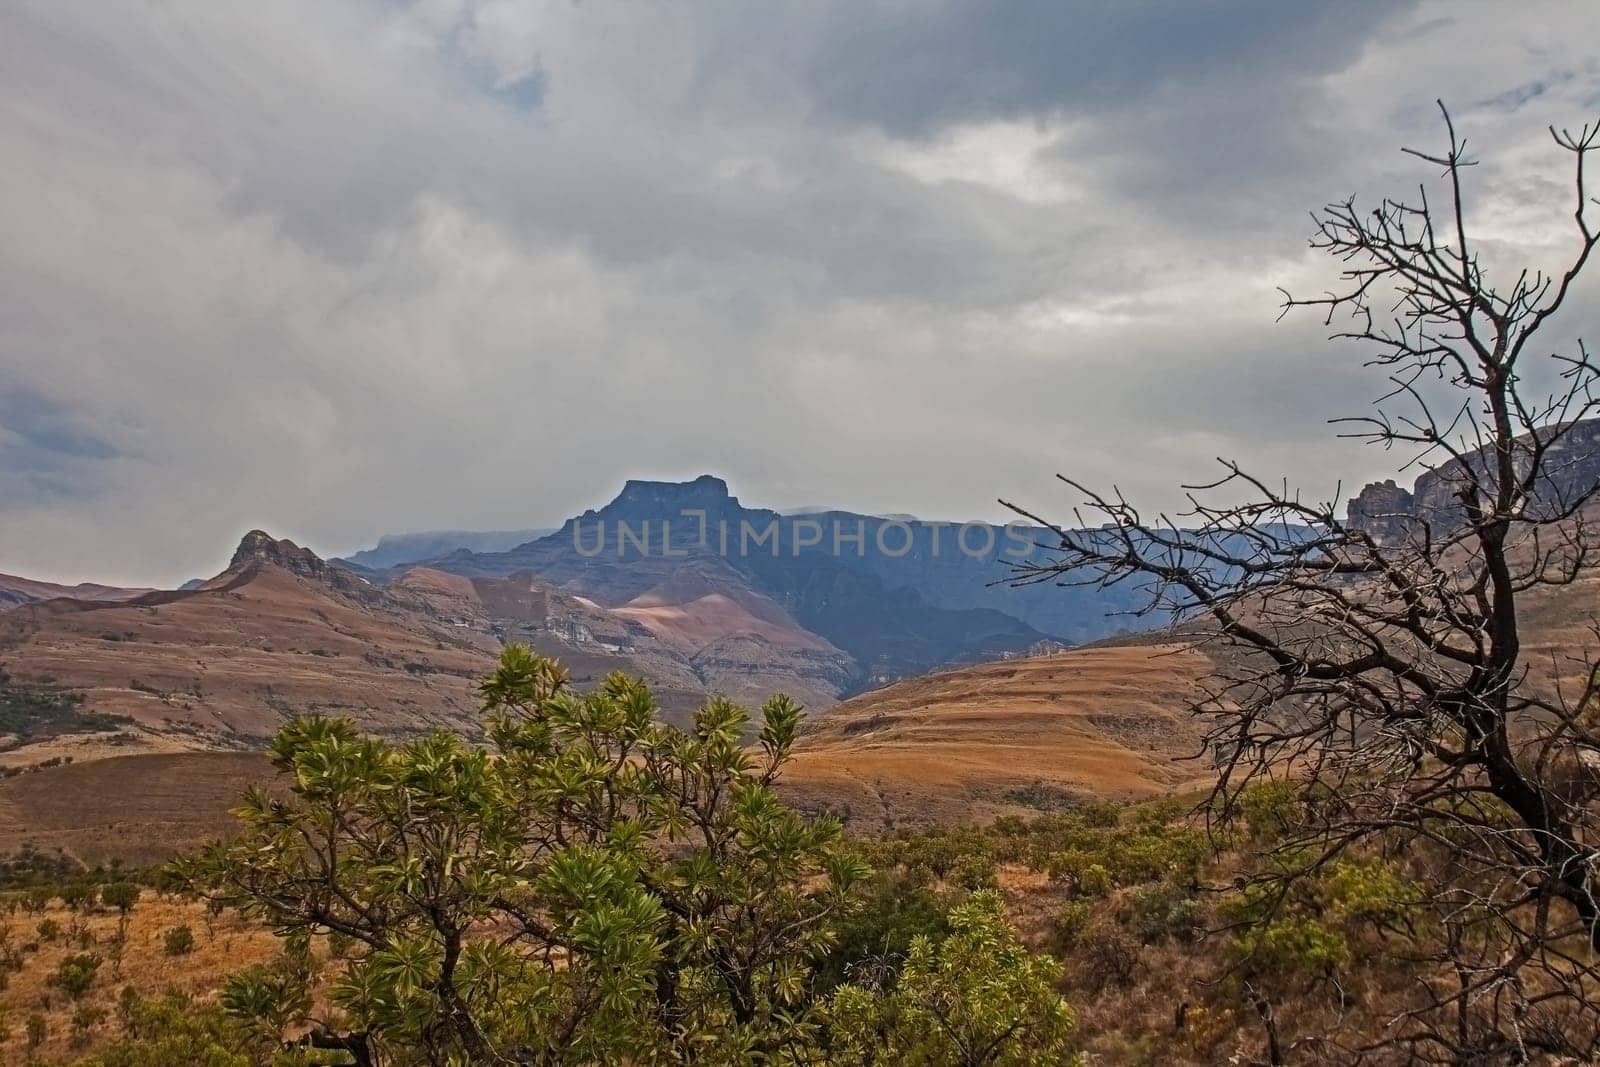 Drakensberg Mountain scene 15595 by kobus_peche